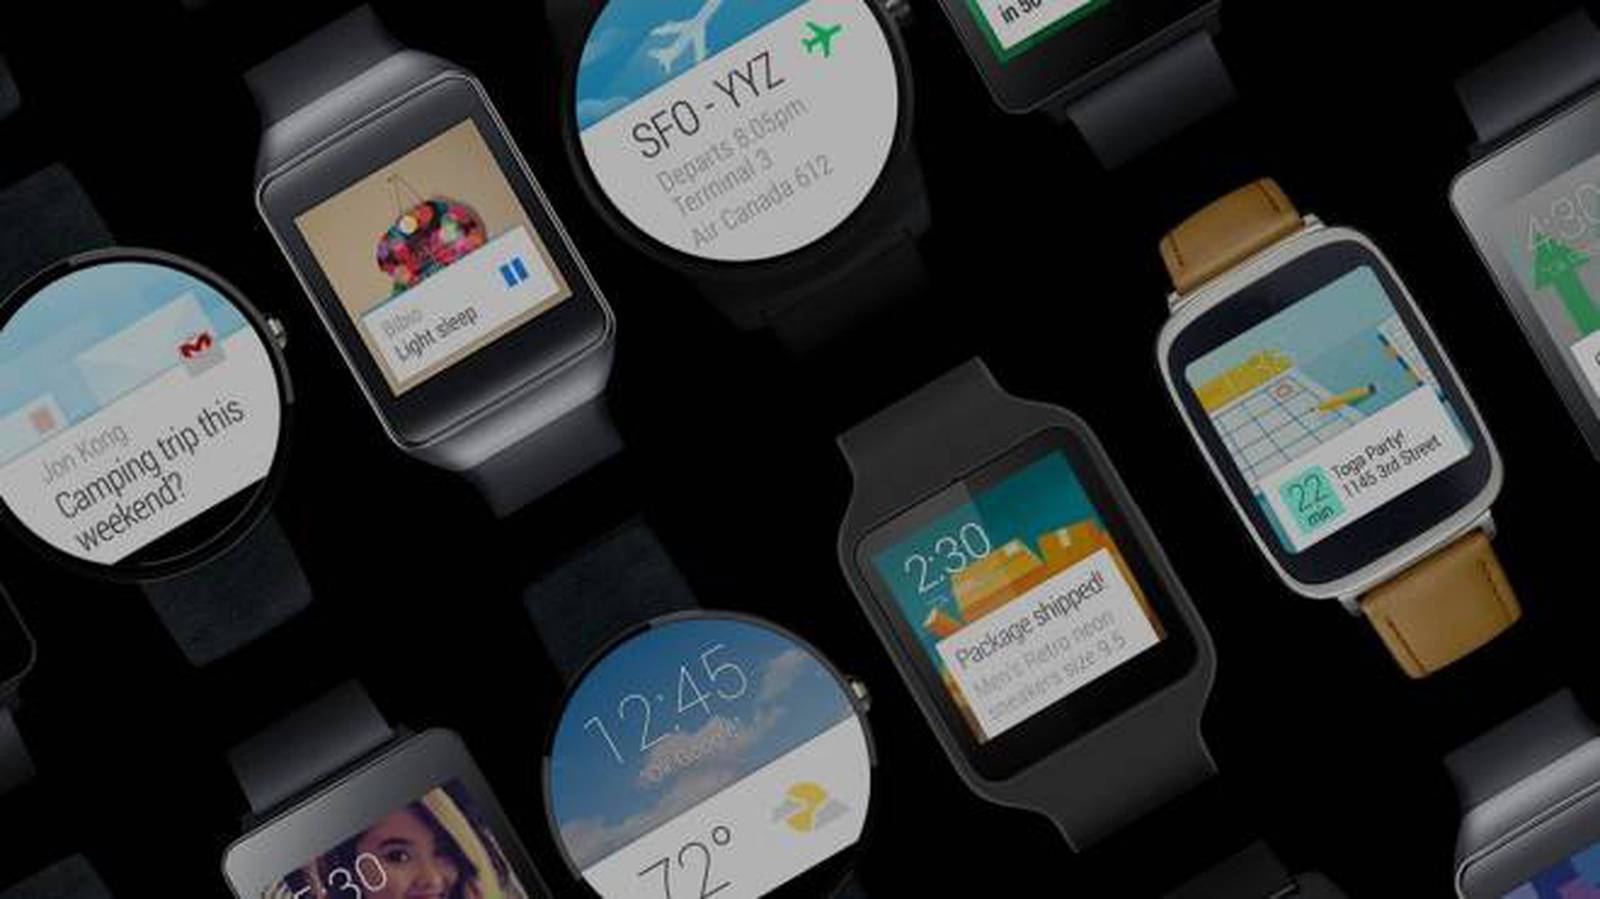 Google prepara dos smartwatches Nexus con Android Wear 2.0